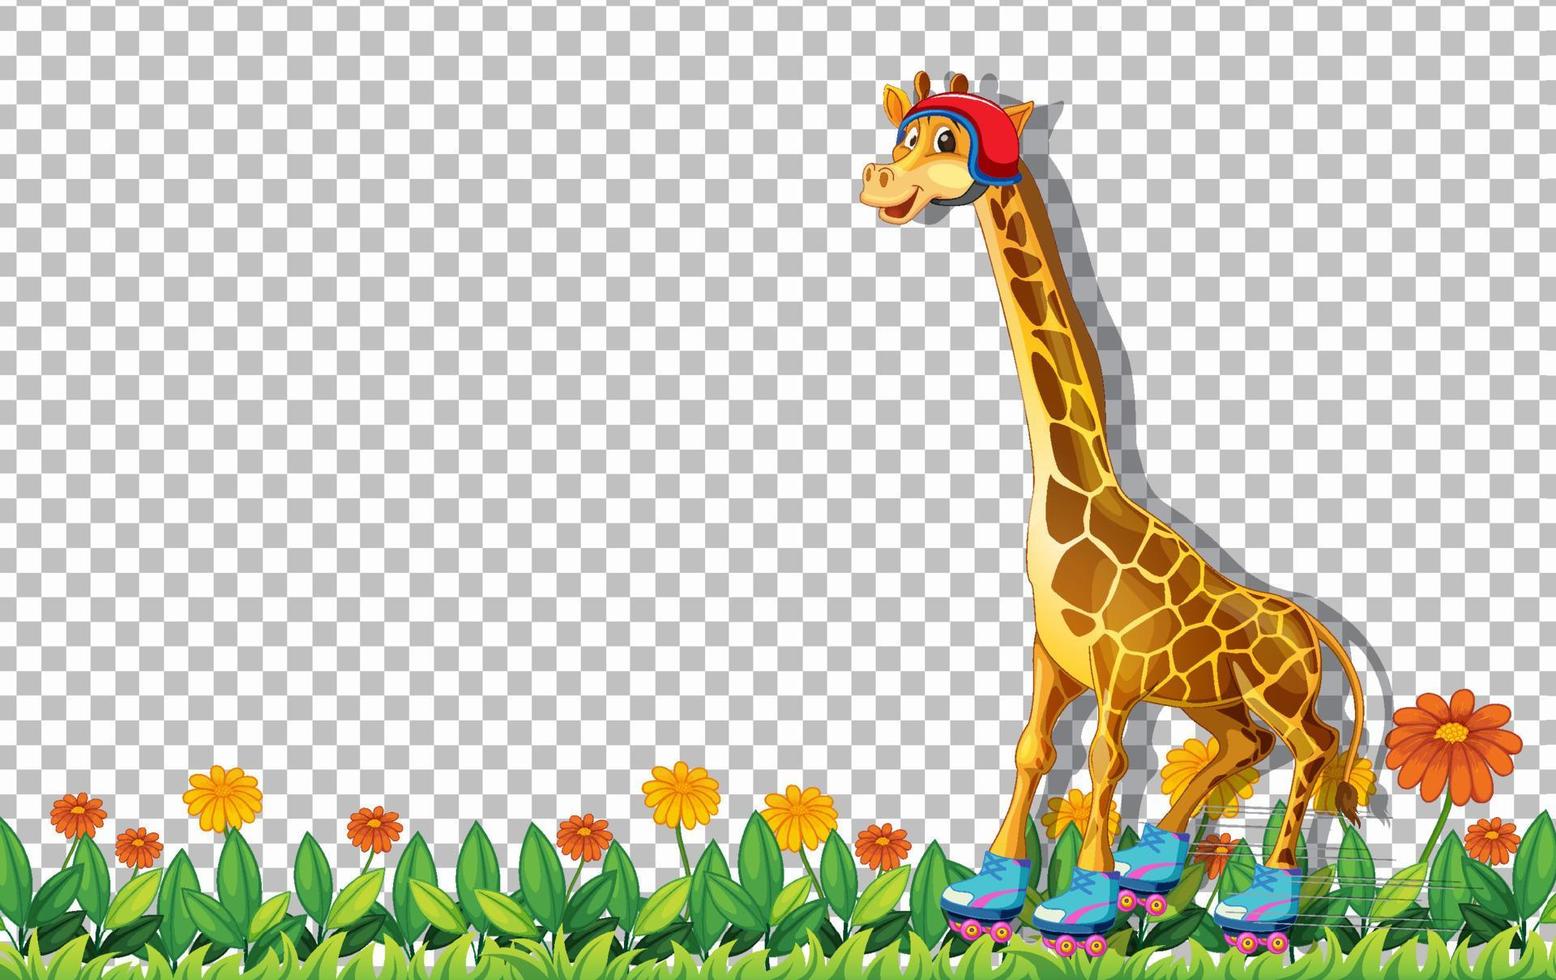 giraffa che indossa scarpe con pattini a rotelle sullo sfondo della griglia vettore